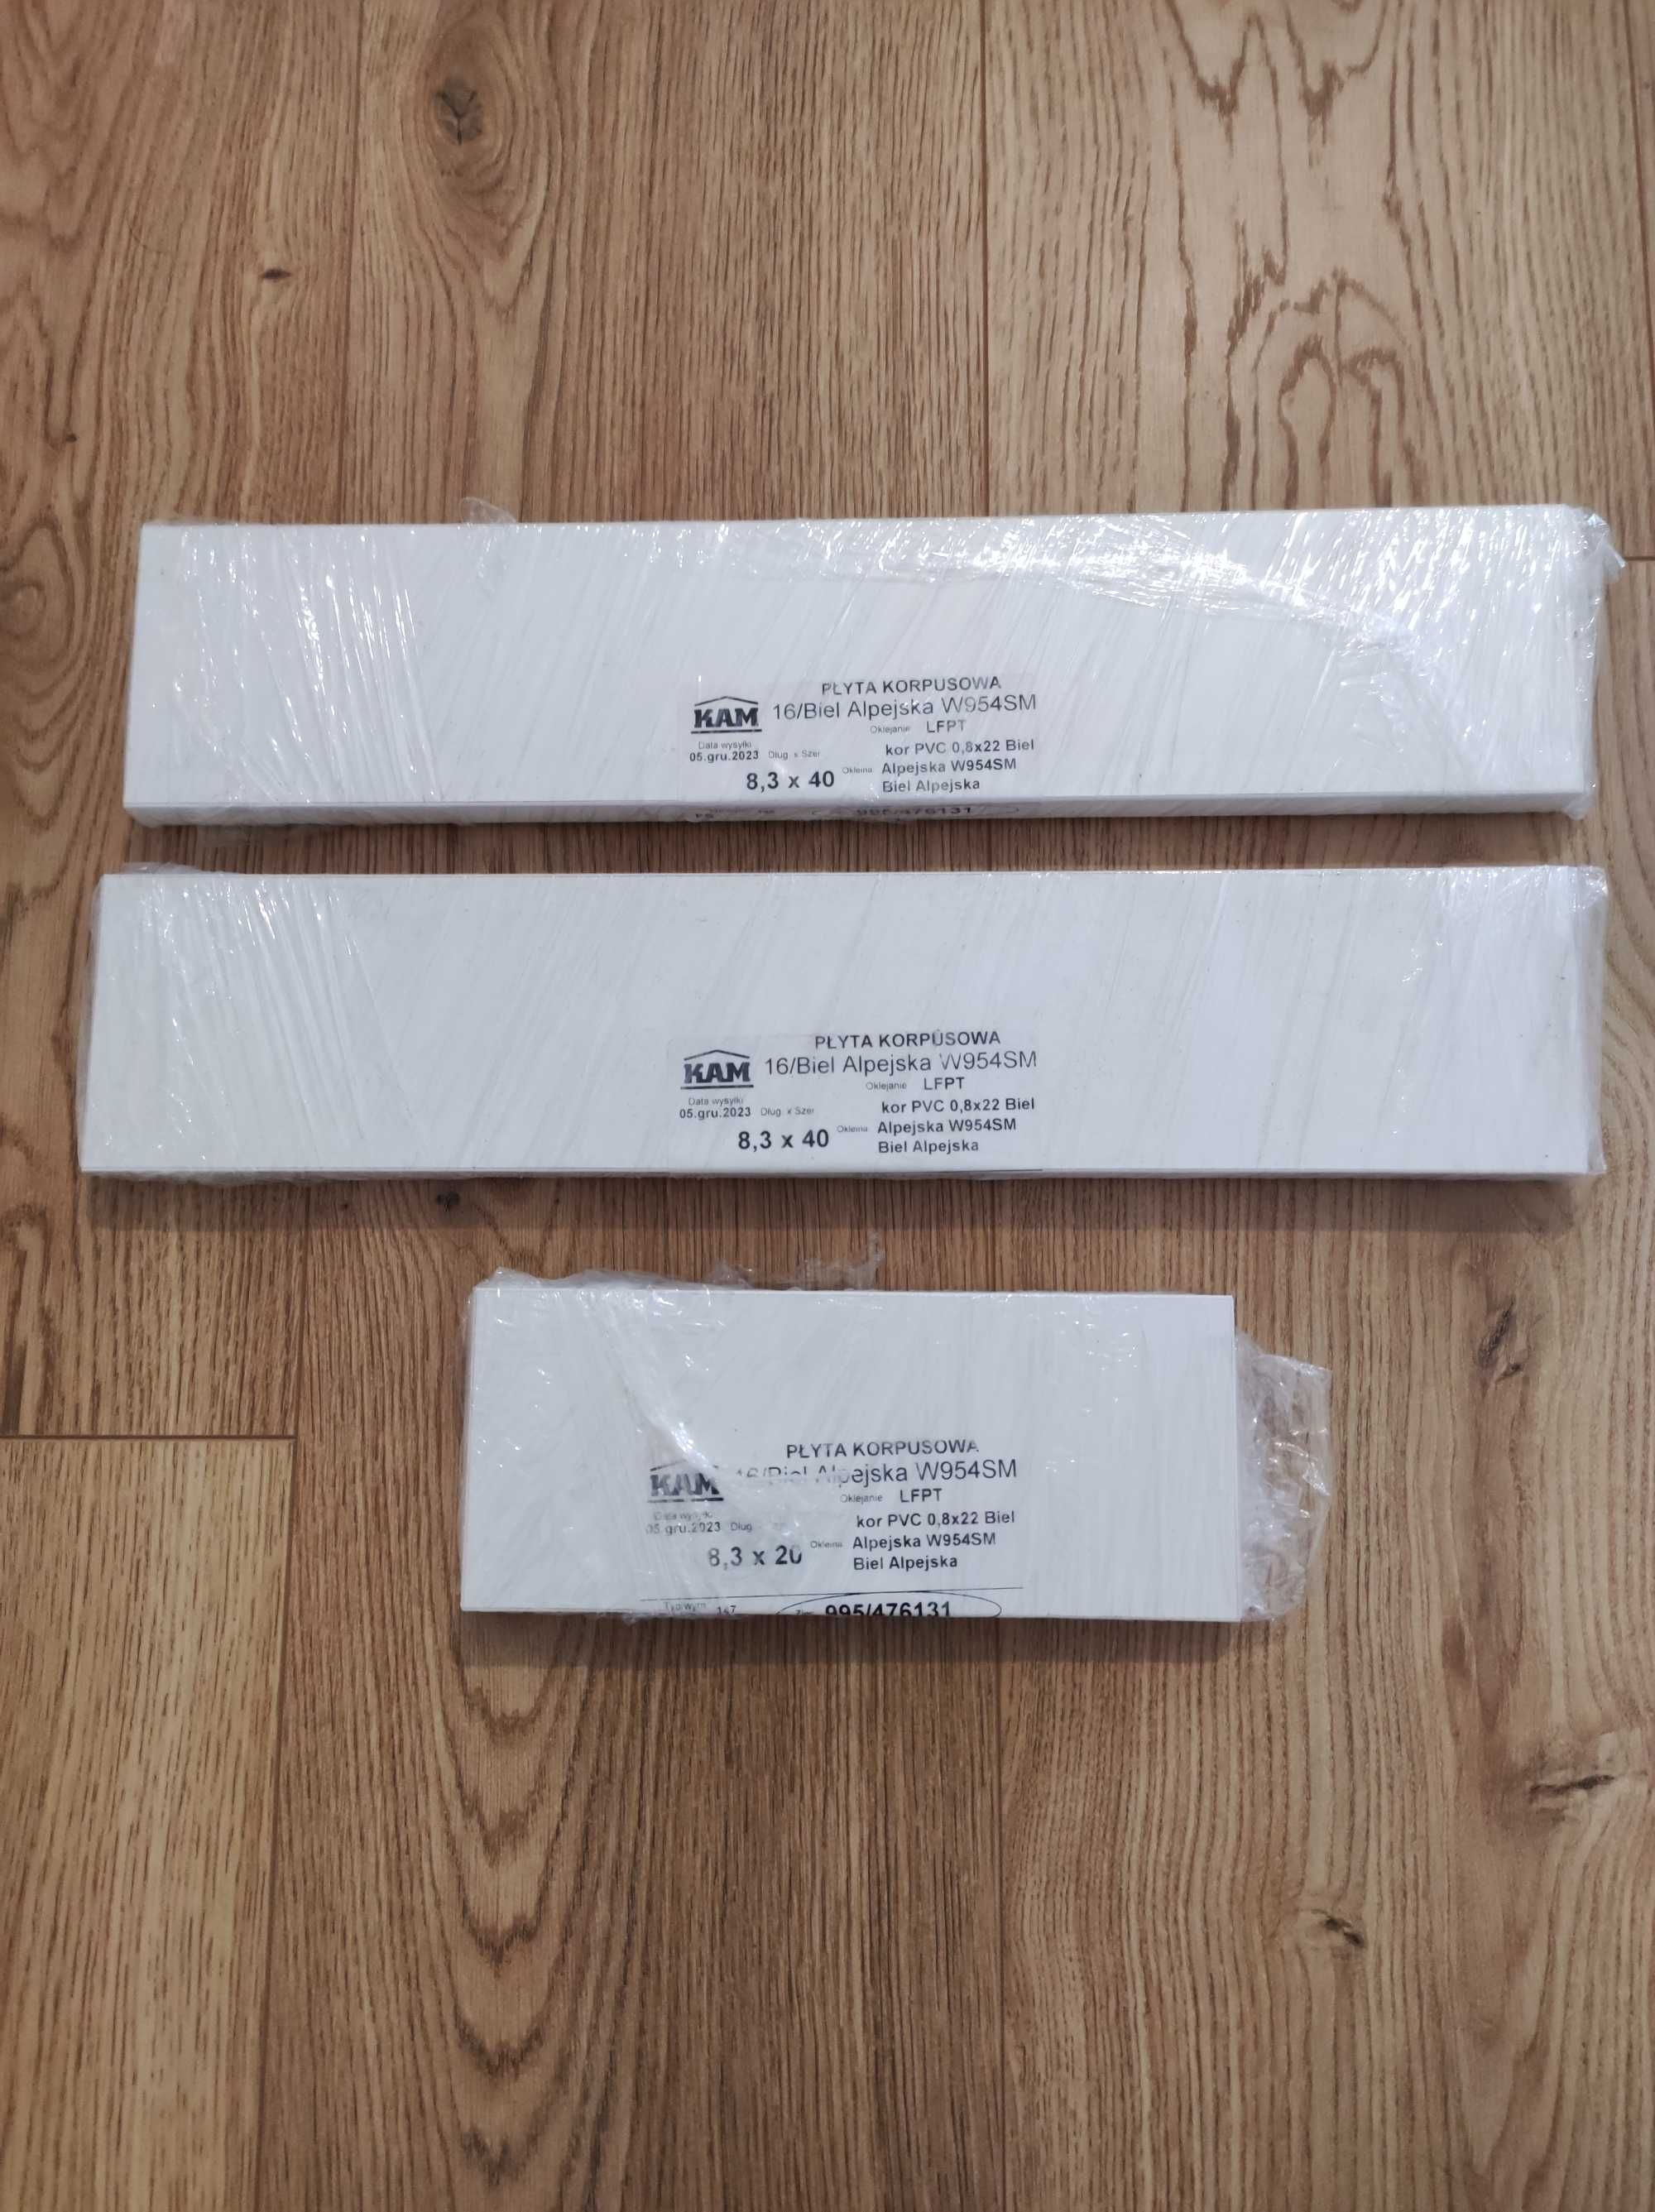 Płyta korpusowa meblowa biel alpejska półka 8,3 x 40 i 8,3 x 20